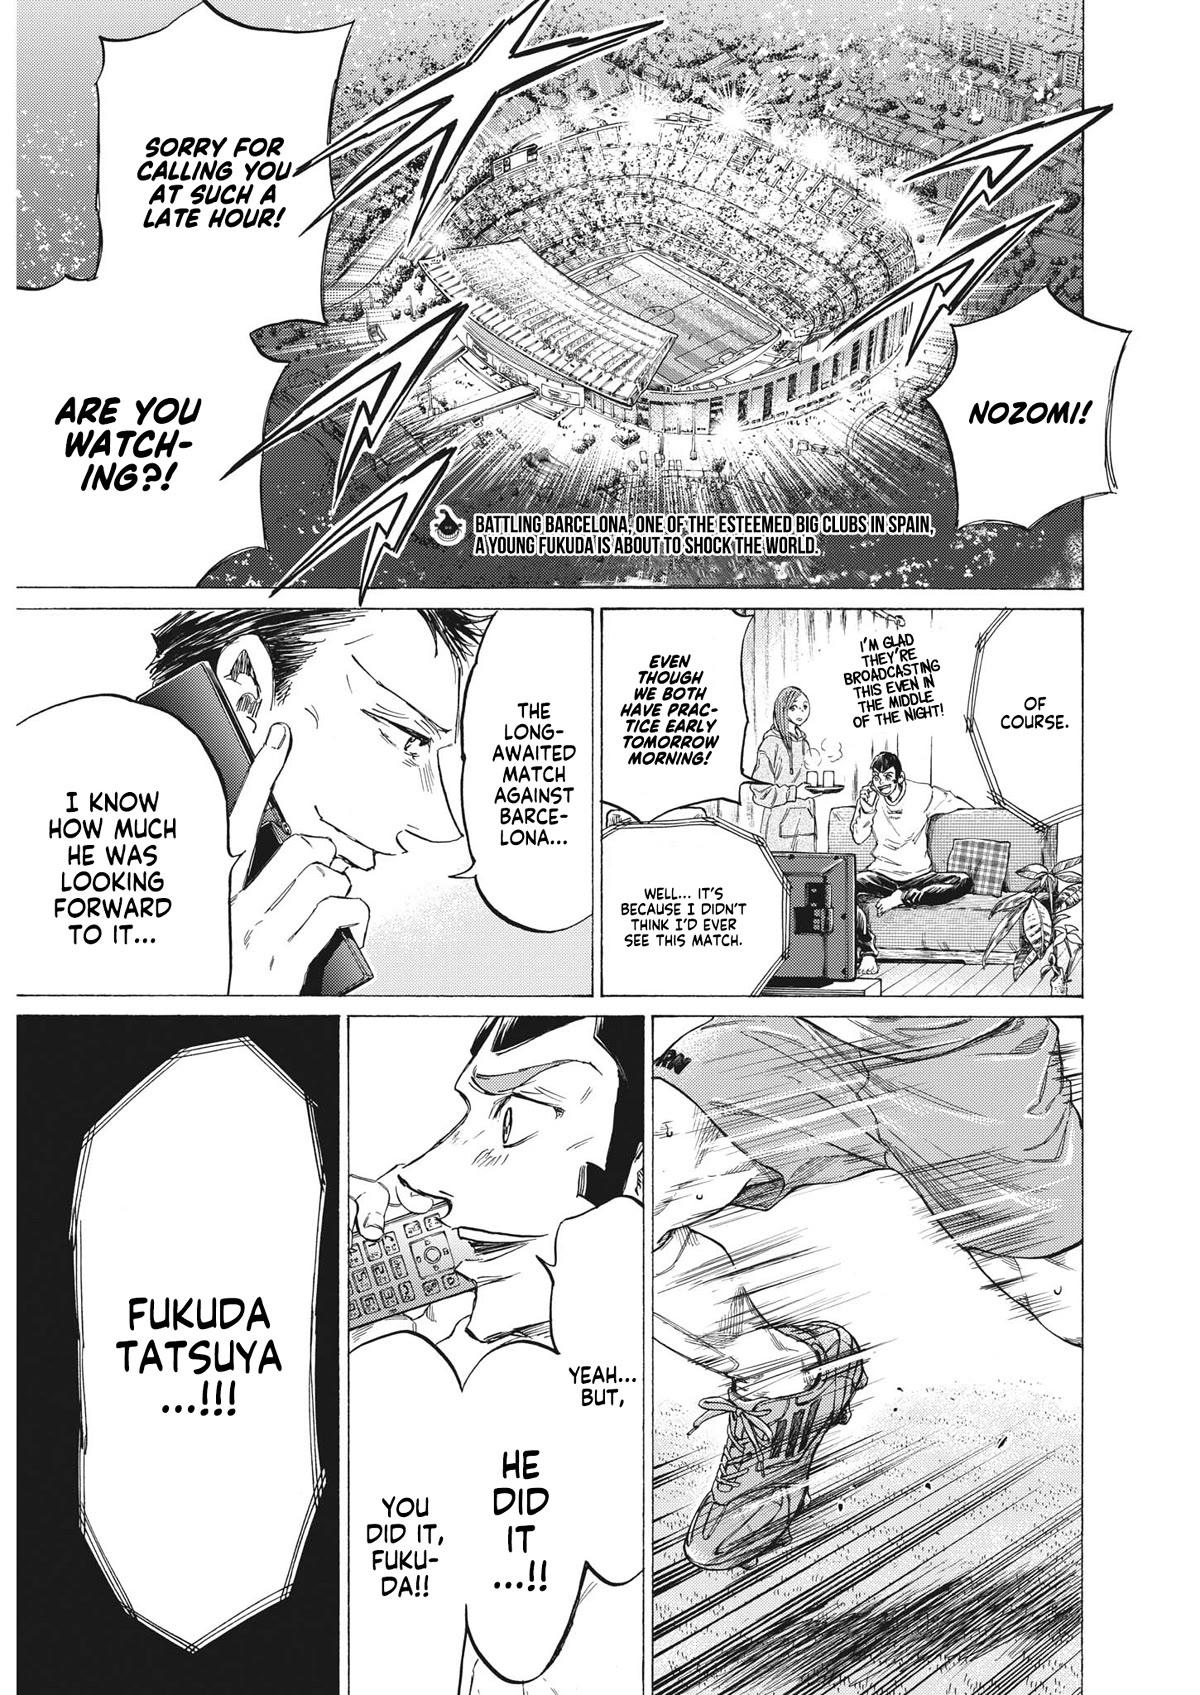 Ao Ashi, Chapter 345 - Ao Ashi Manga Online